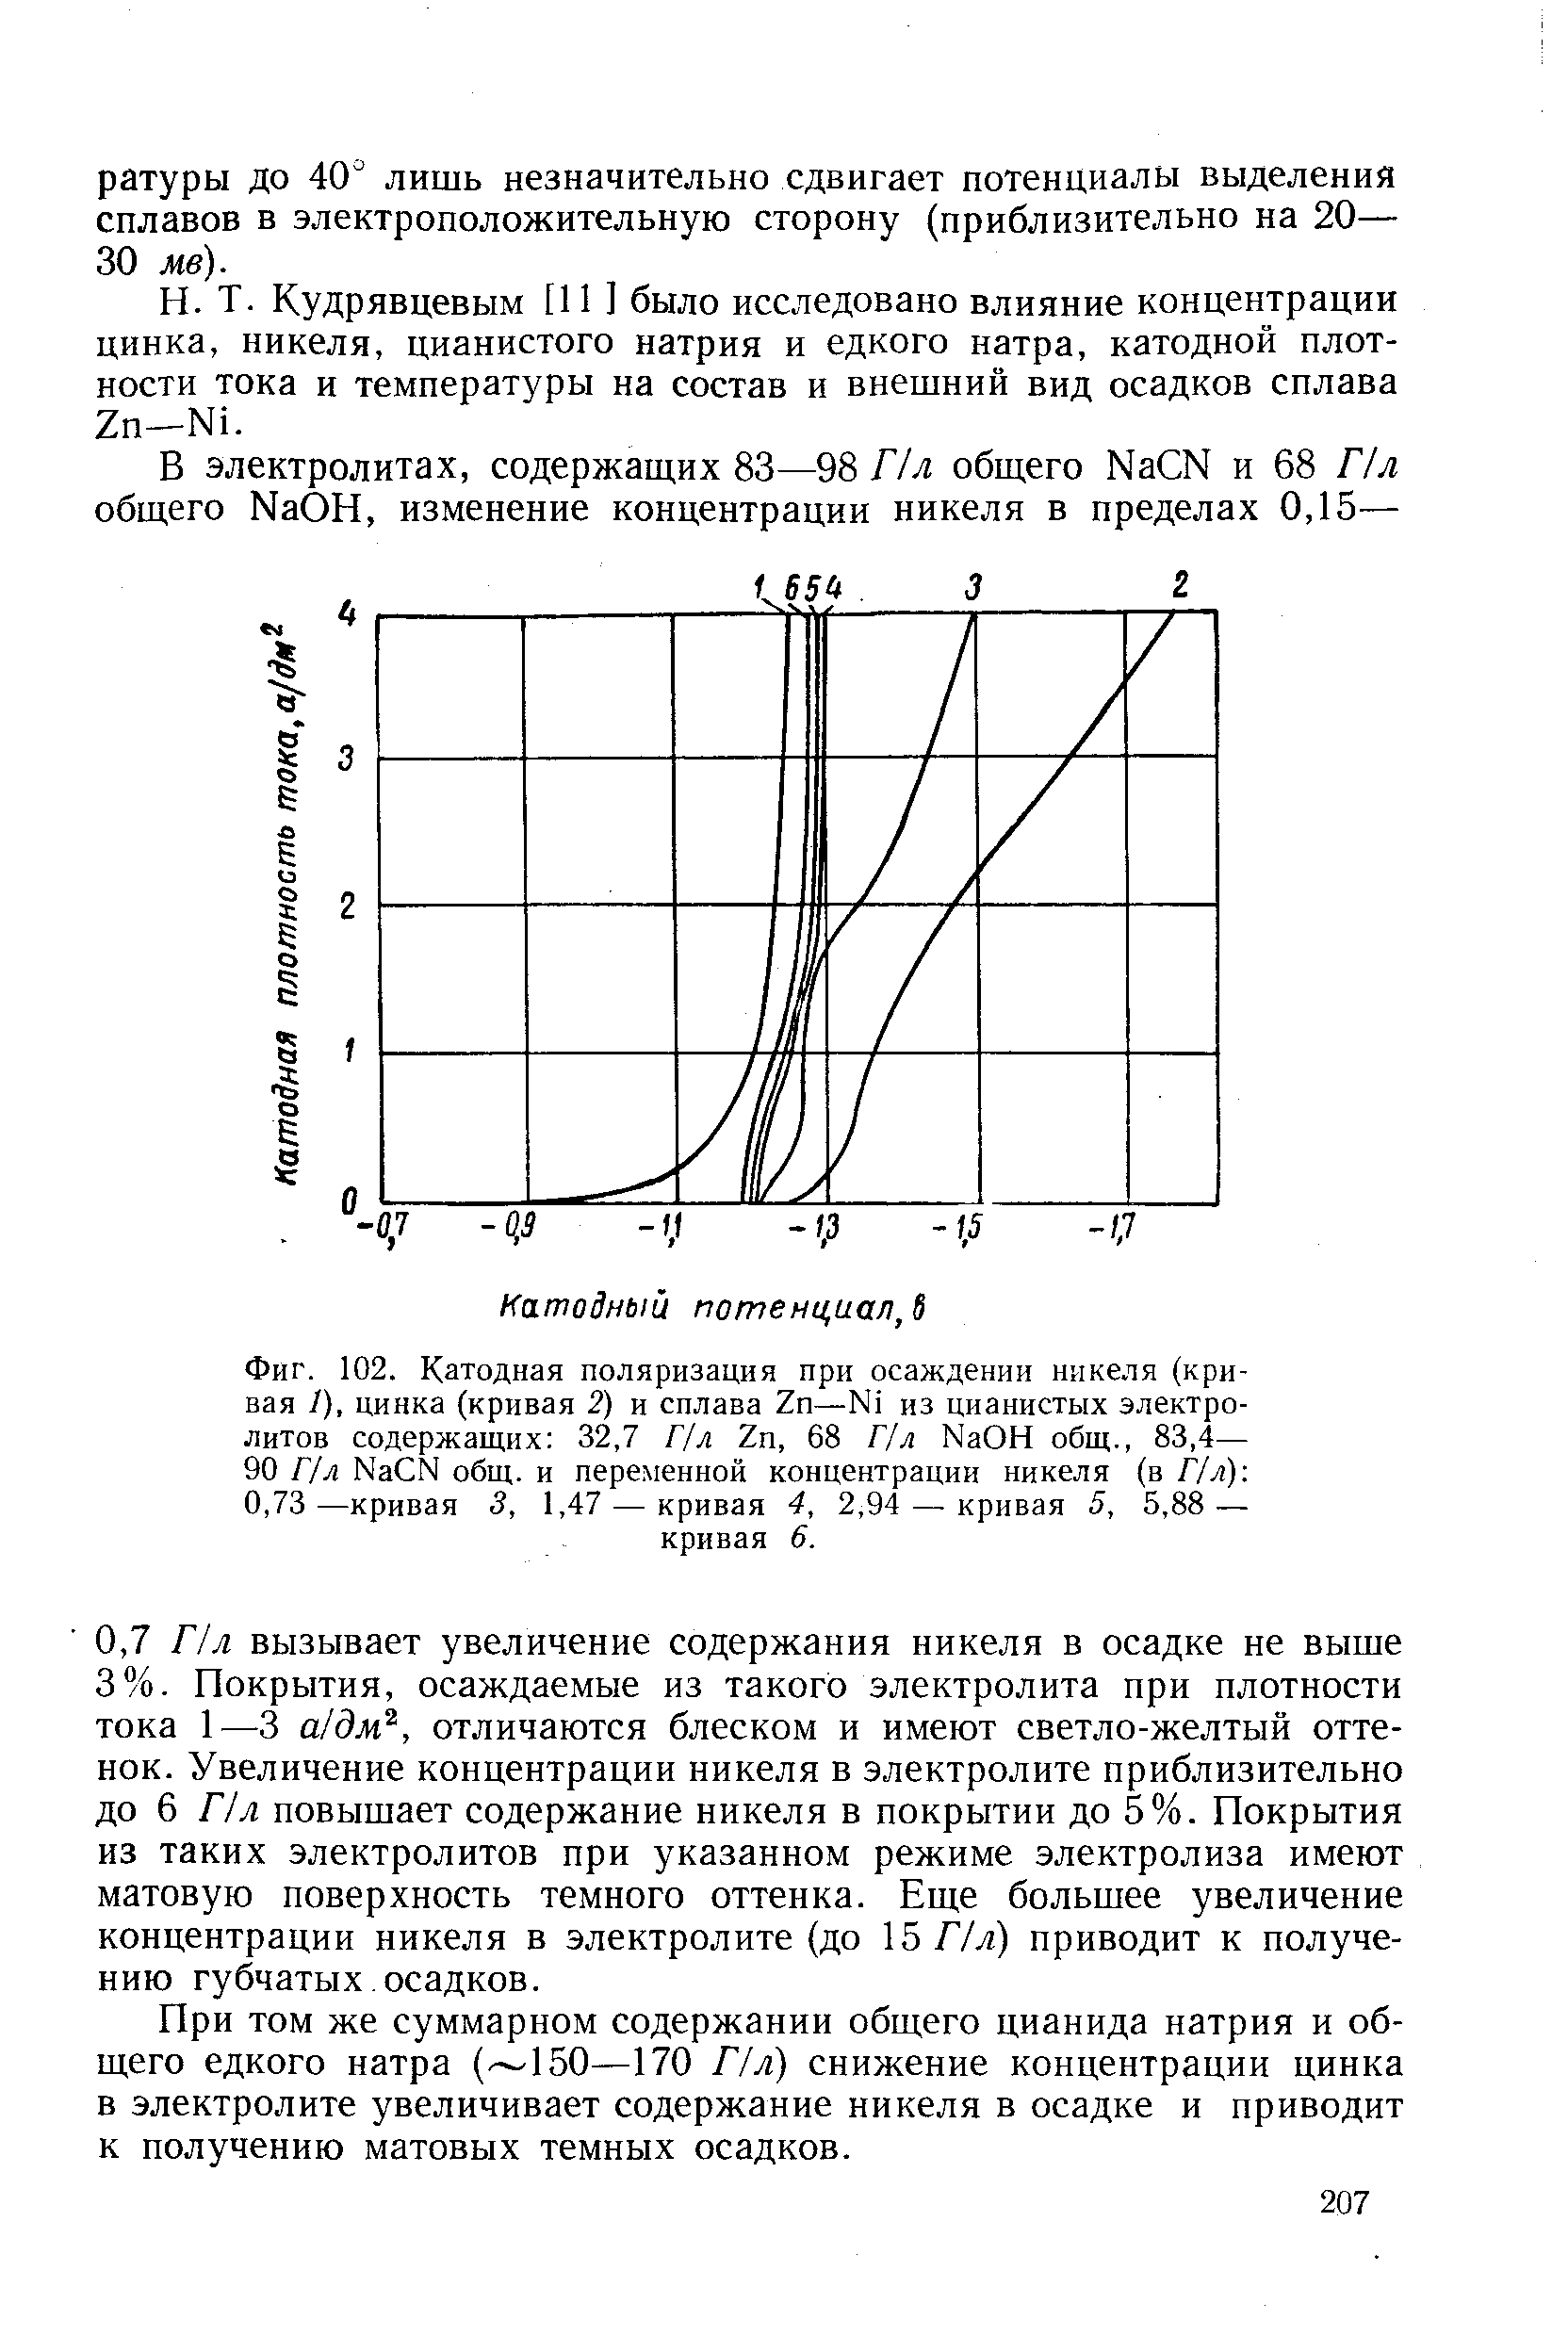 Фиг. 102. <a href="/info/39667">Катодная поляризация</a> при <a href="/info/638141">осаждении никеля</a> (кривая 1), цинка (кривая 2) и сплава Zn—N1 из цианистых электролитов содержащих 32,7 Г/л Zn, 68 Г/л NaOH общ., 83,4— 90 Г/л Na N общ. и переменной концентрации никеля (в Г/л) 0,73—кривая 3, 1,47 — кривая 4, 2,94 — кривая 5, 5,88 — кривая 6.
